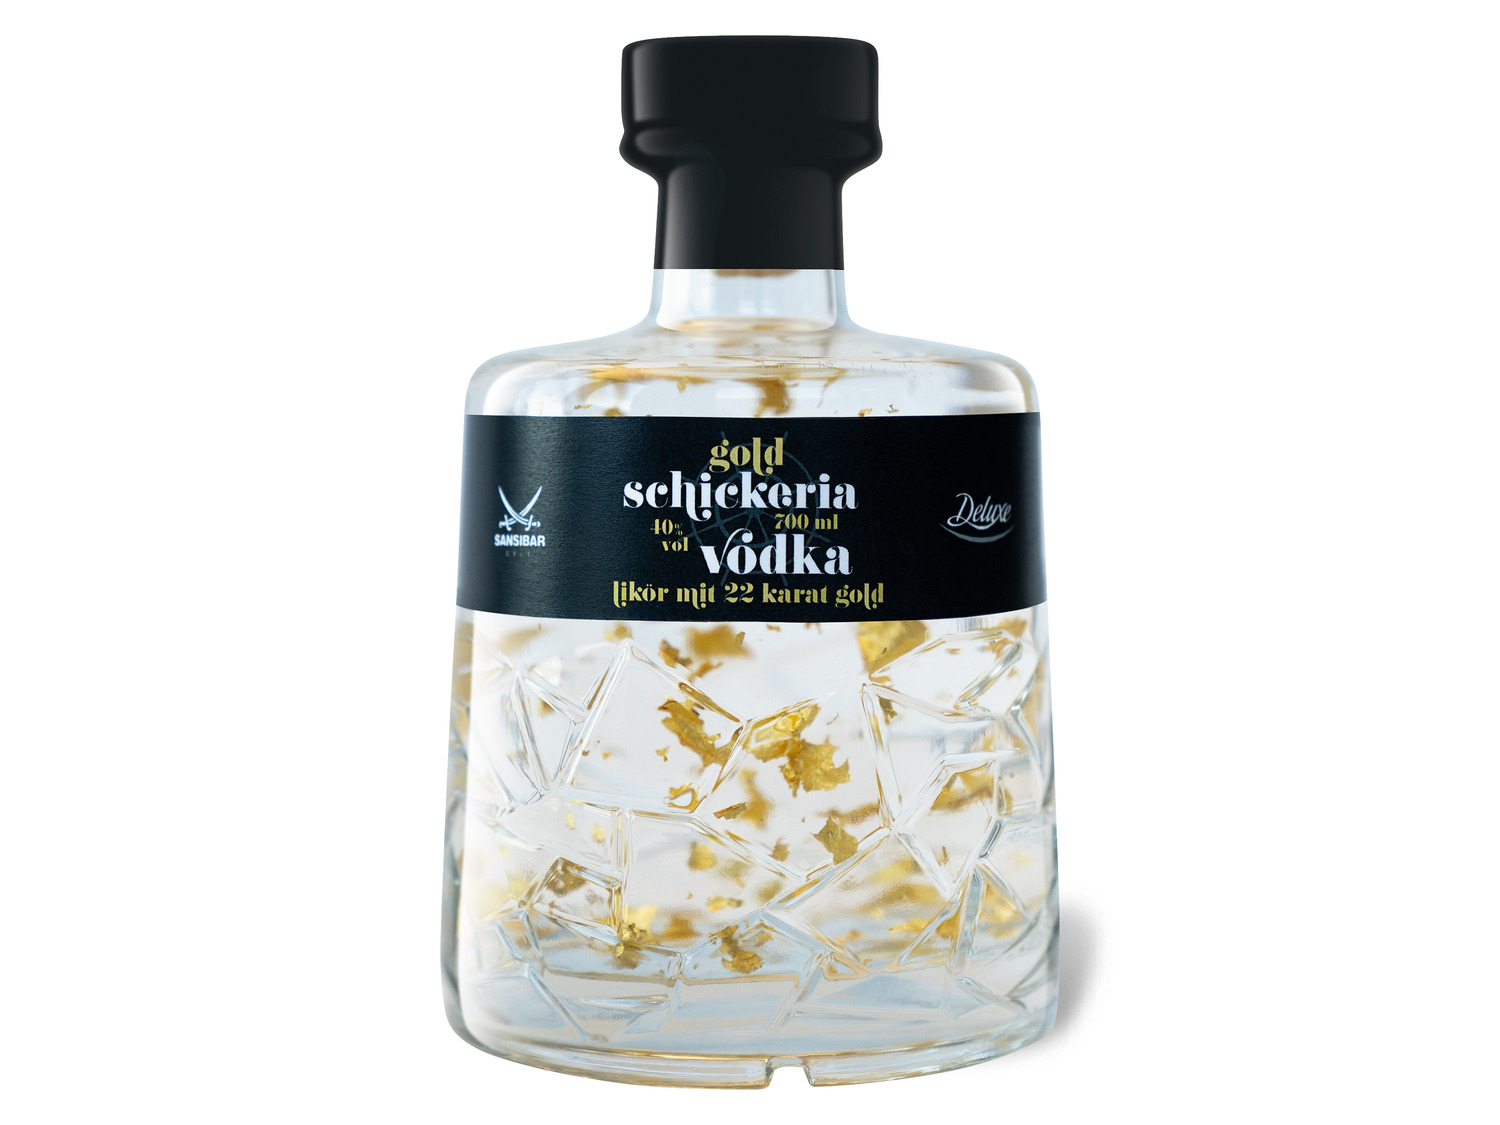 Sansibar Deluxe Schickeria Vodkalikör mit Goldstückche…